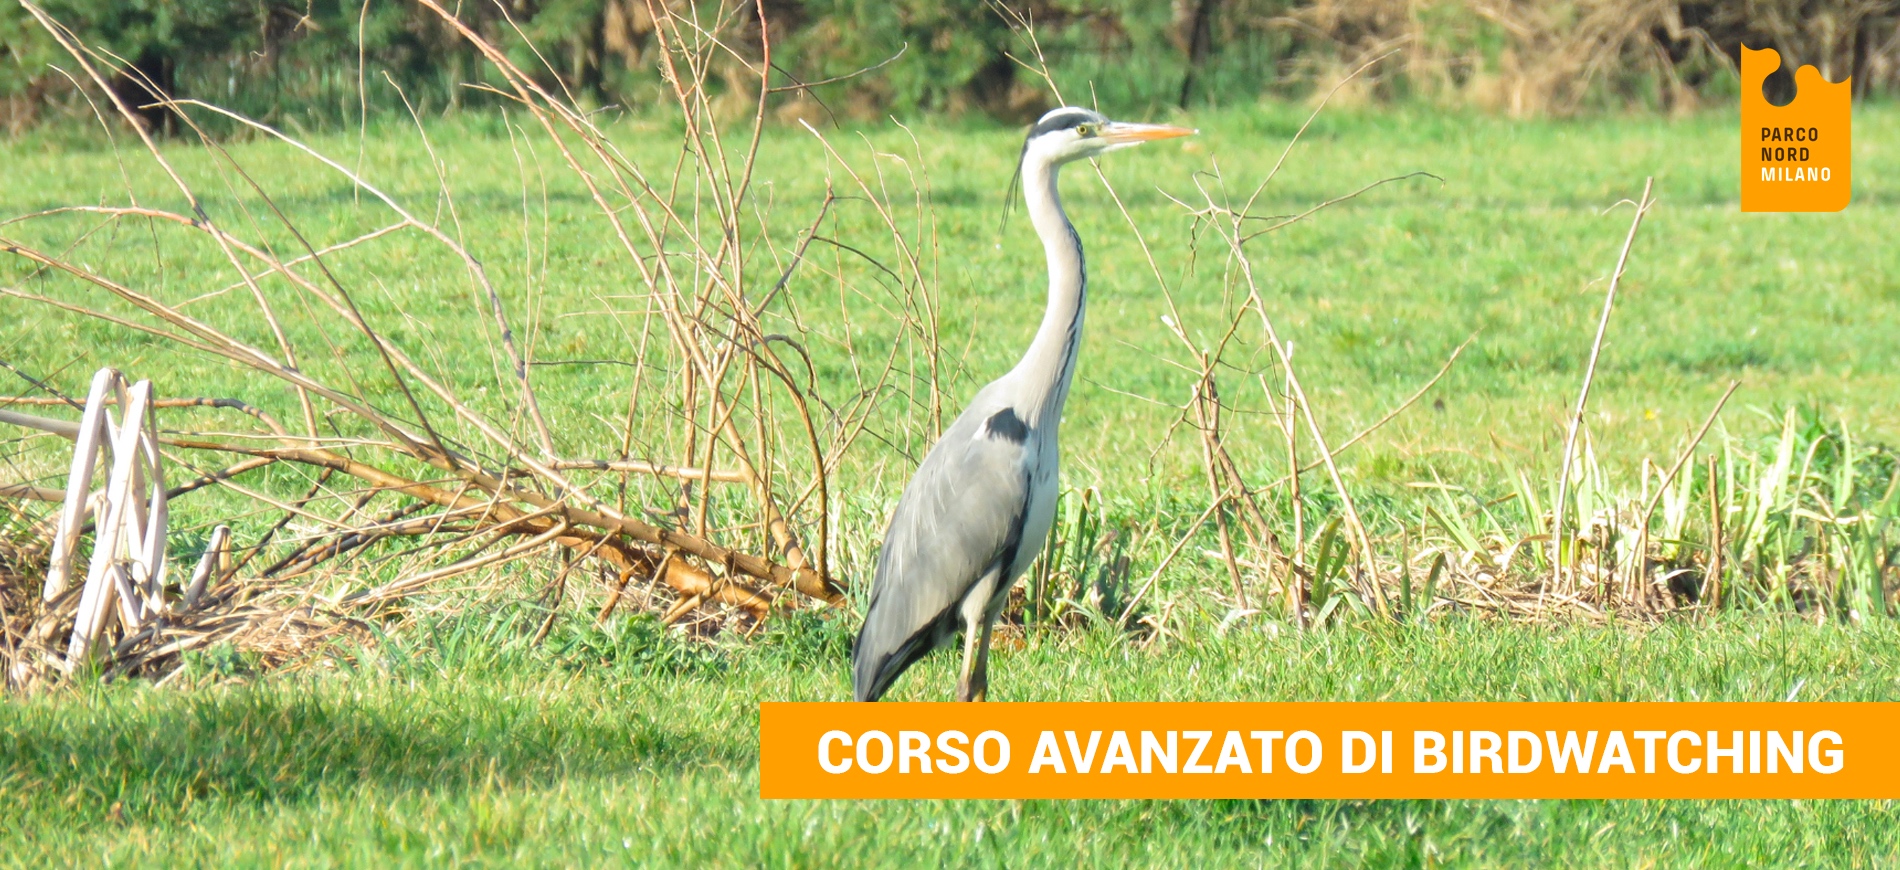 Corso avanzato di Birdwatching-Parco Nord Milano